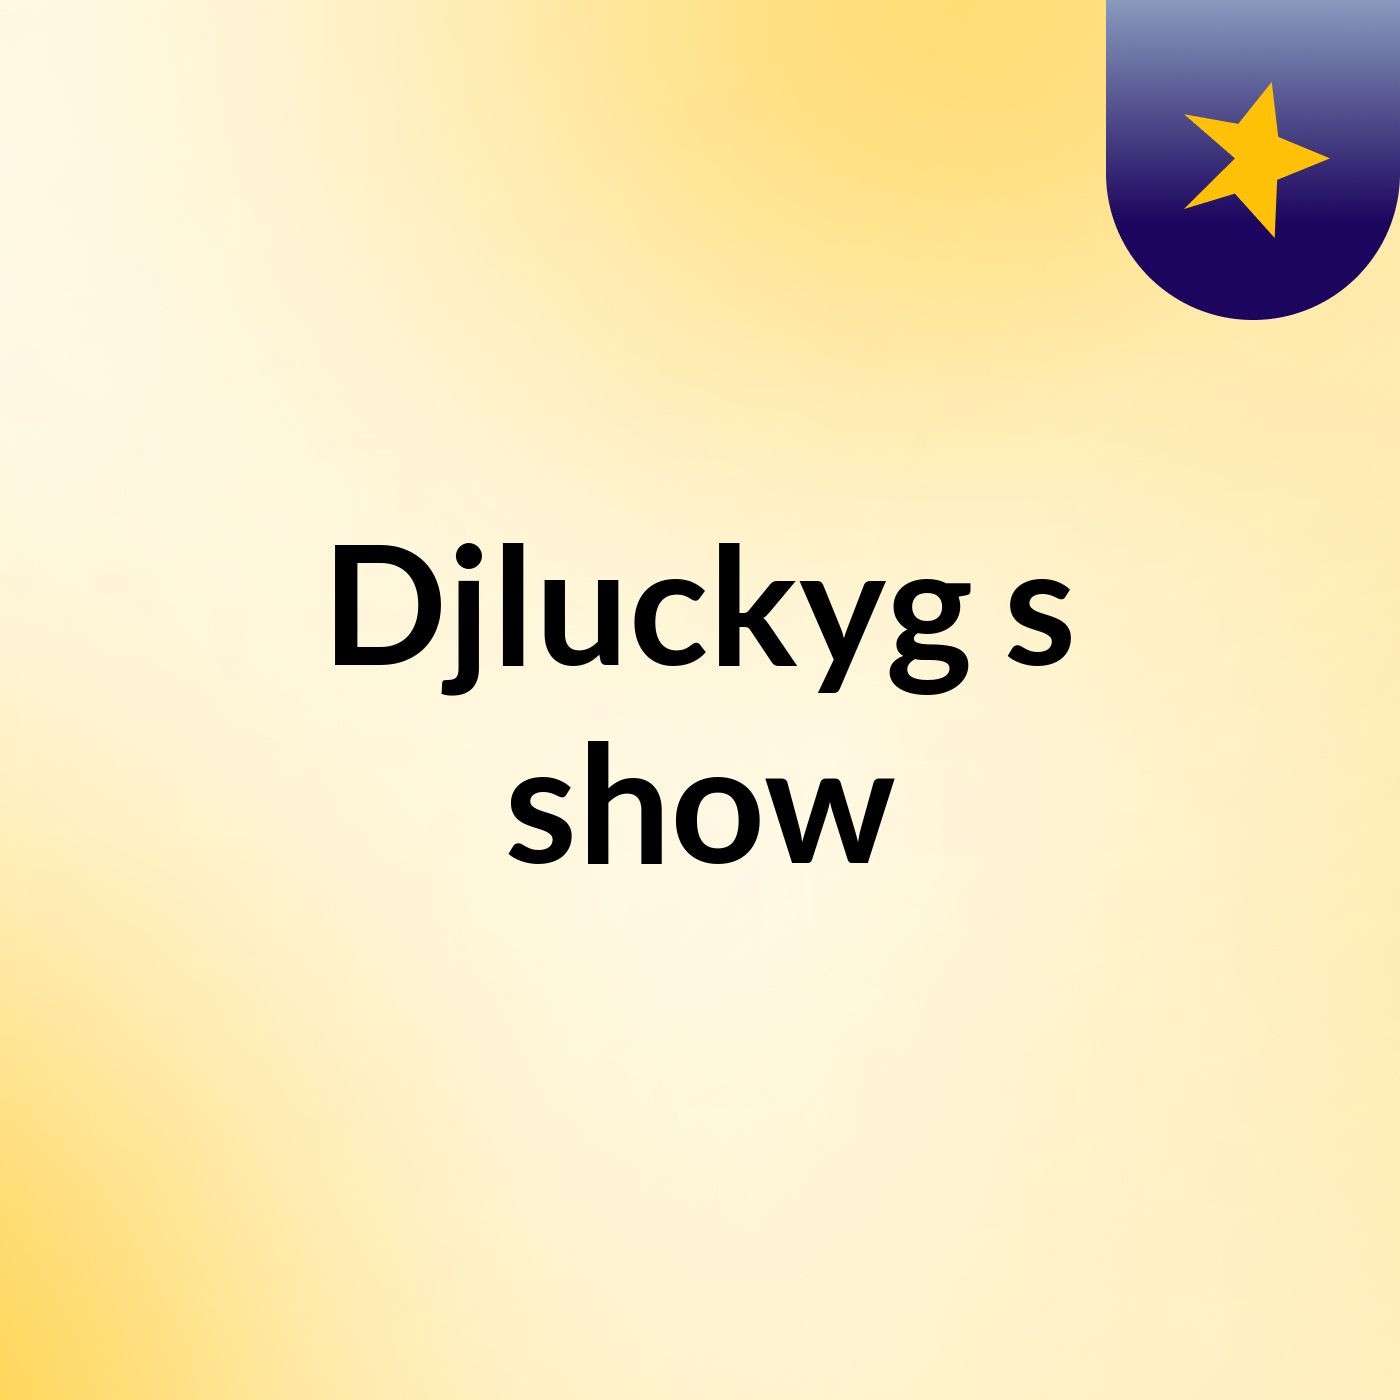 Djluckyg's show